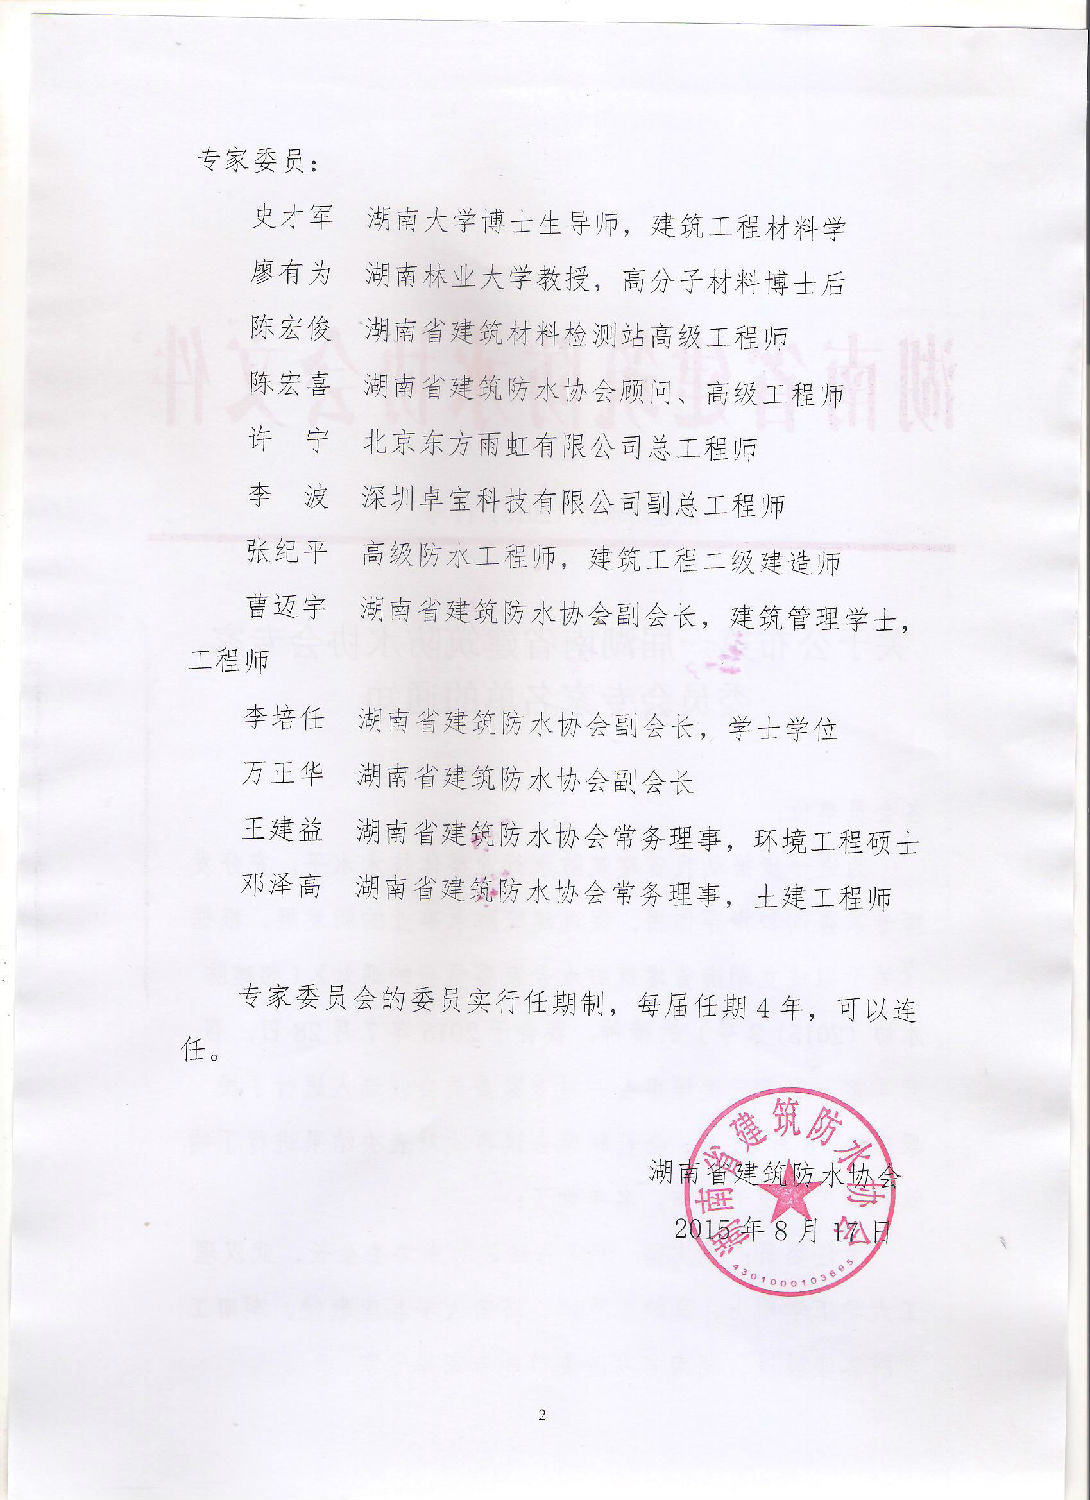 【同远防水】关于公布届湖南省建筑防水协会专家委员会专家名单的通知